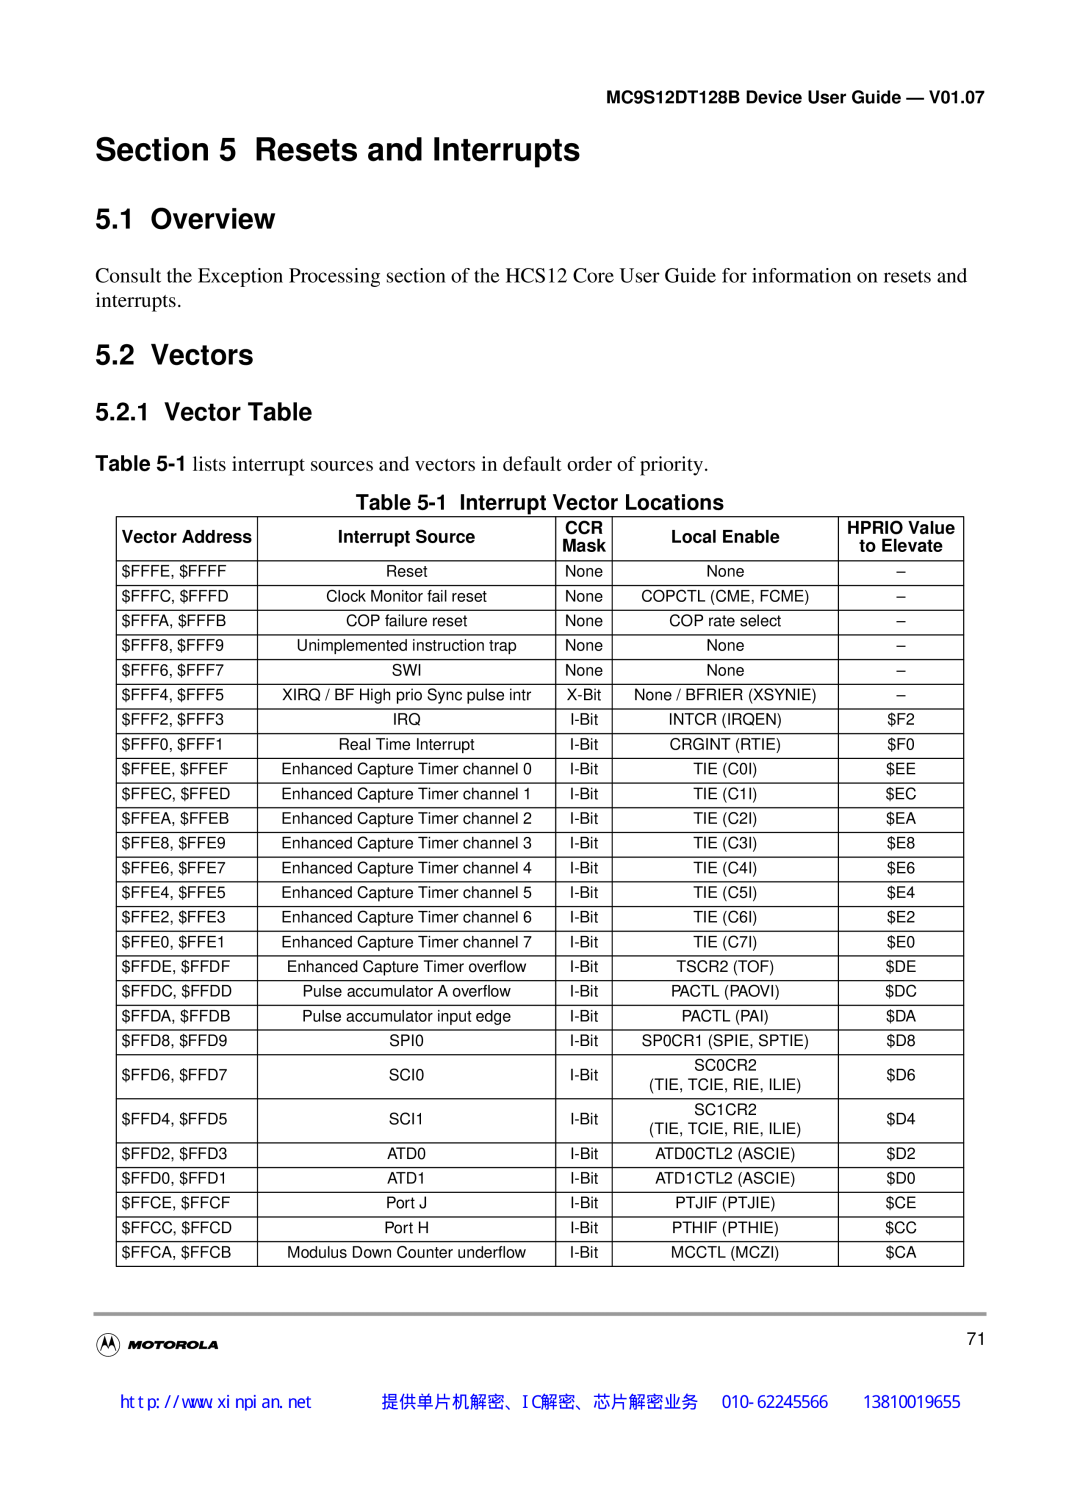 Motorola MC9S12DG128B, MC9S12DT128B Resets and Interrupts, Overview, Vectors, Vector Table, 1 Interrupt Vector Locations 